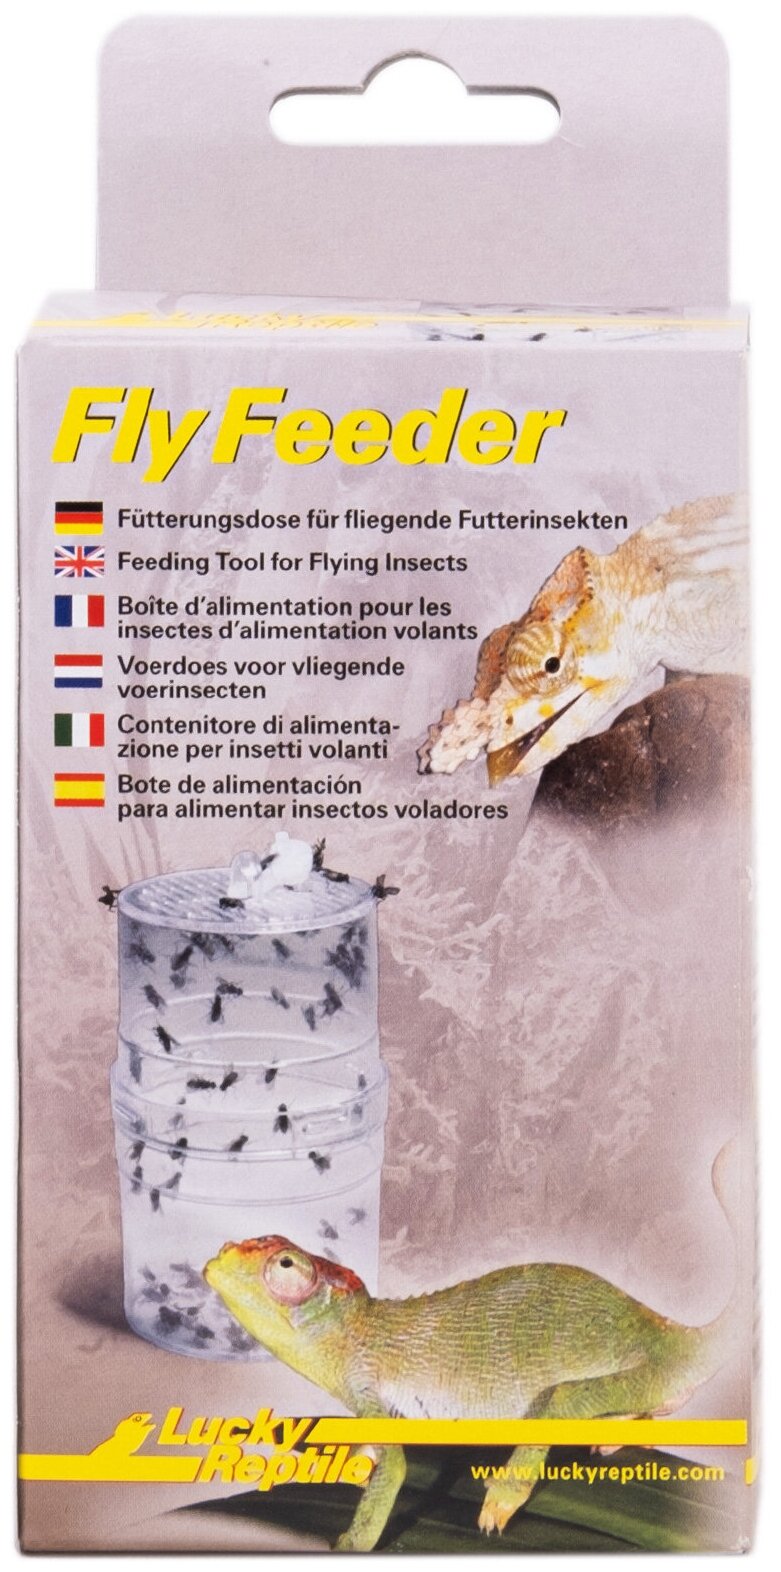 LUCKY REPTILE Контейнер для содержания кормовых летающих насекомых "Fly Feeder" (Германия) - фото №1